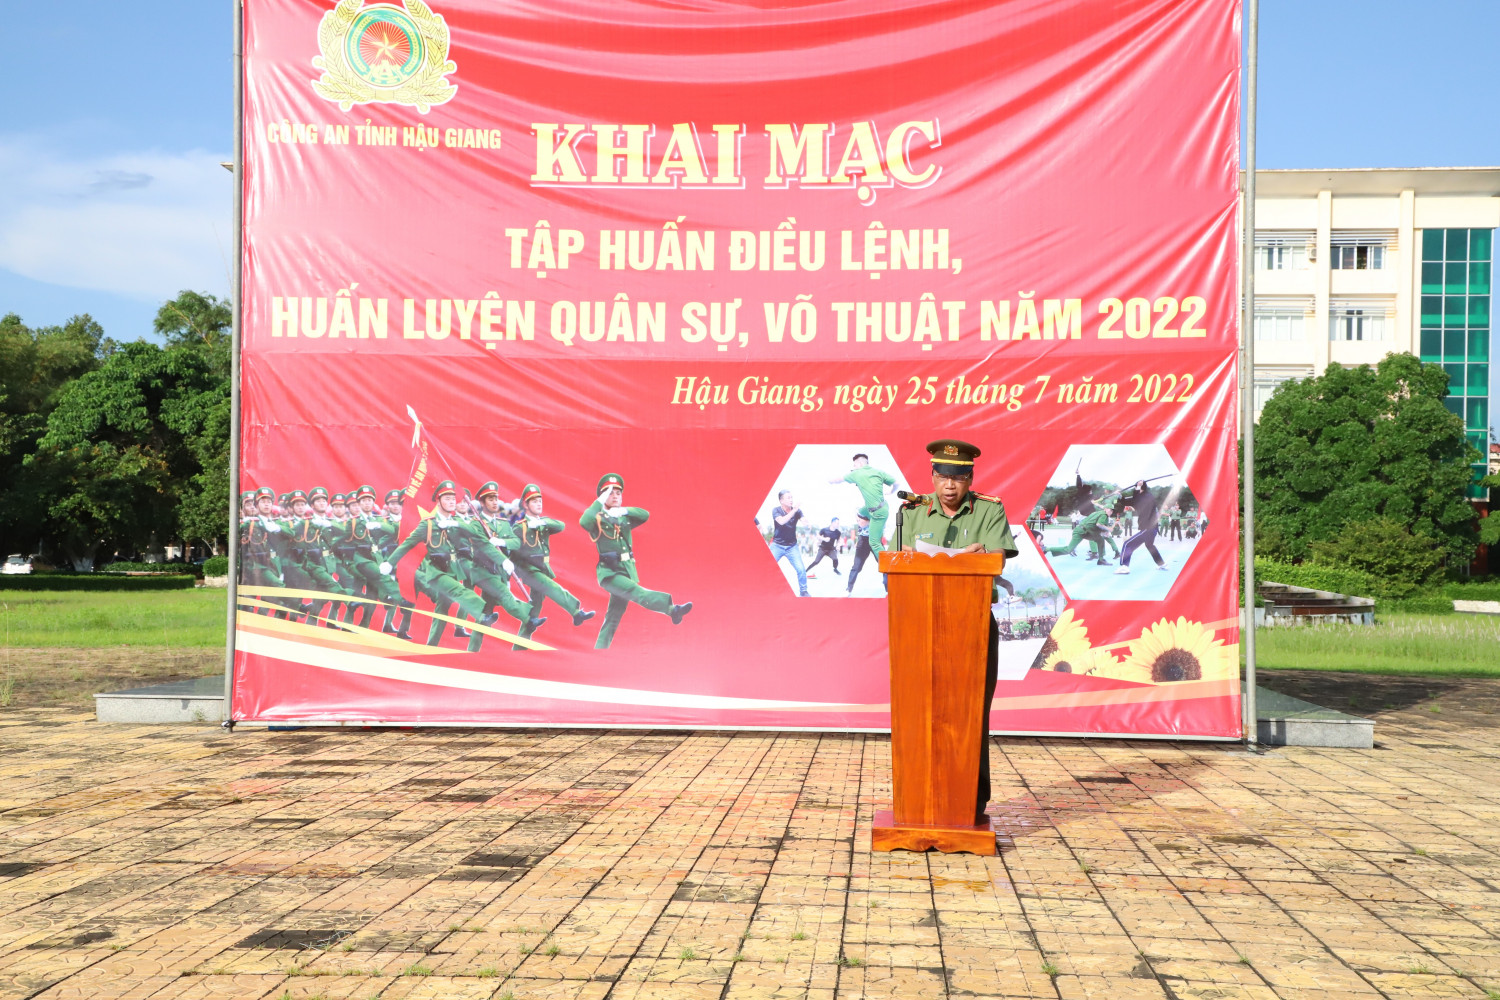 Đại tá Nguyễn Văn Giá, Phó Giám đốc Công an tỉnh phát biểu khai mạc buổi lễ